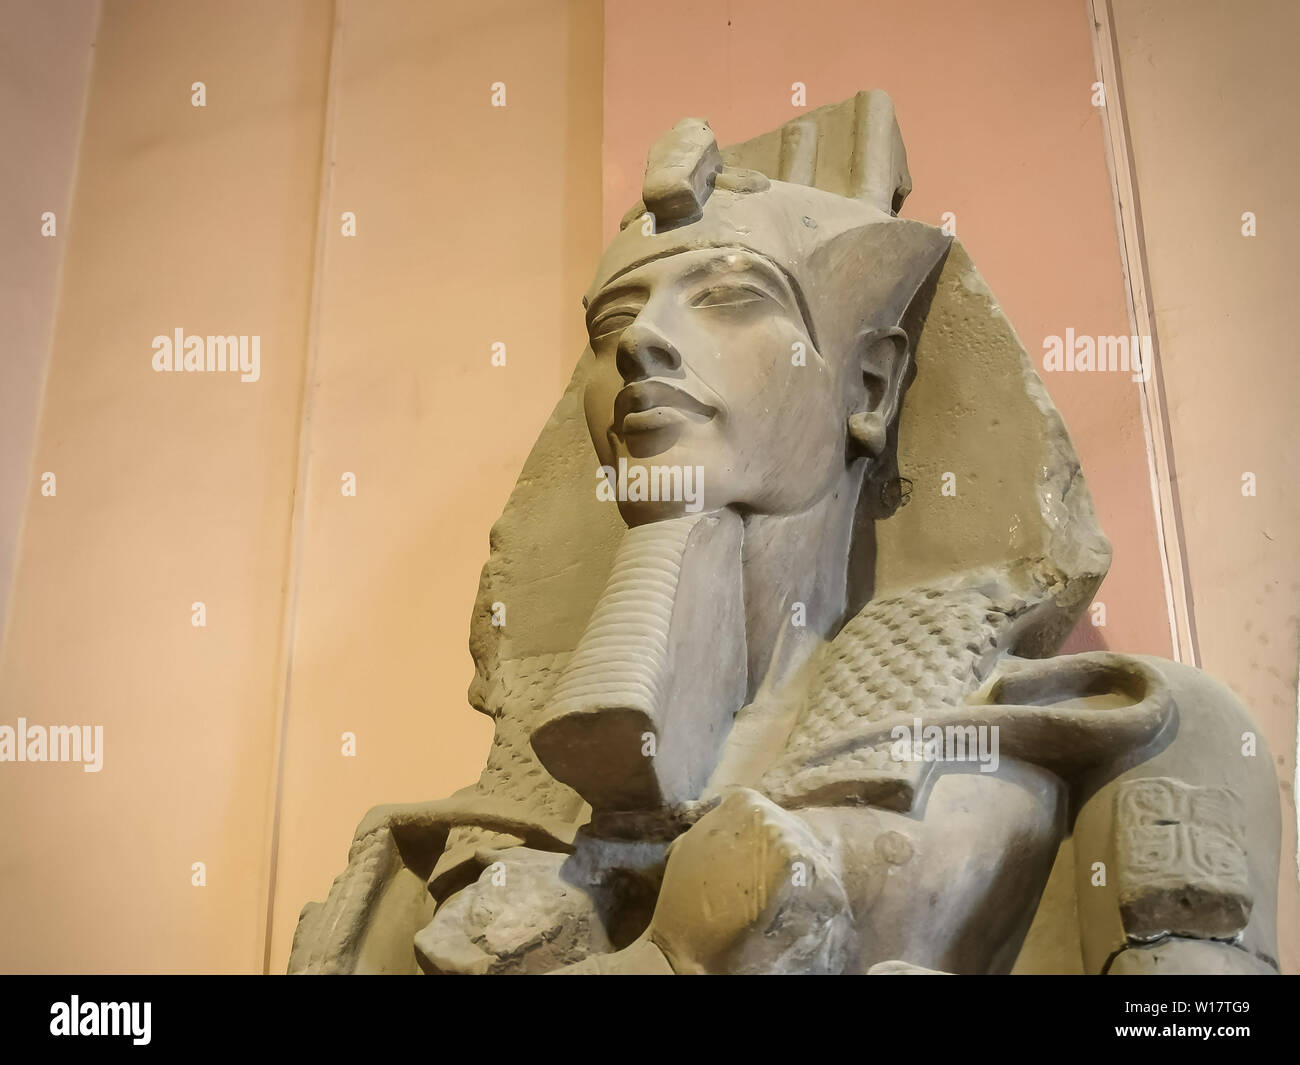 CAIRO, EGYPT- SEPTEMBER, 26, 2016: a statue of pharaoh akhenaten in cairo Stock Photo